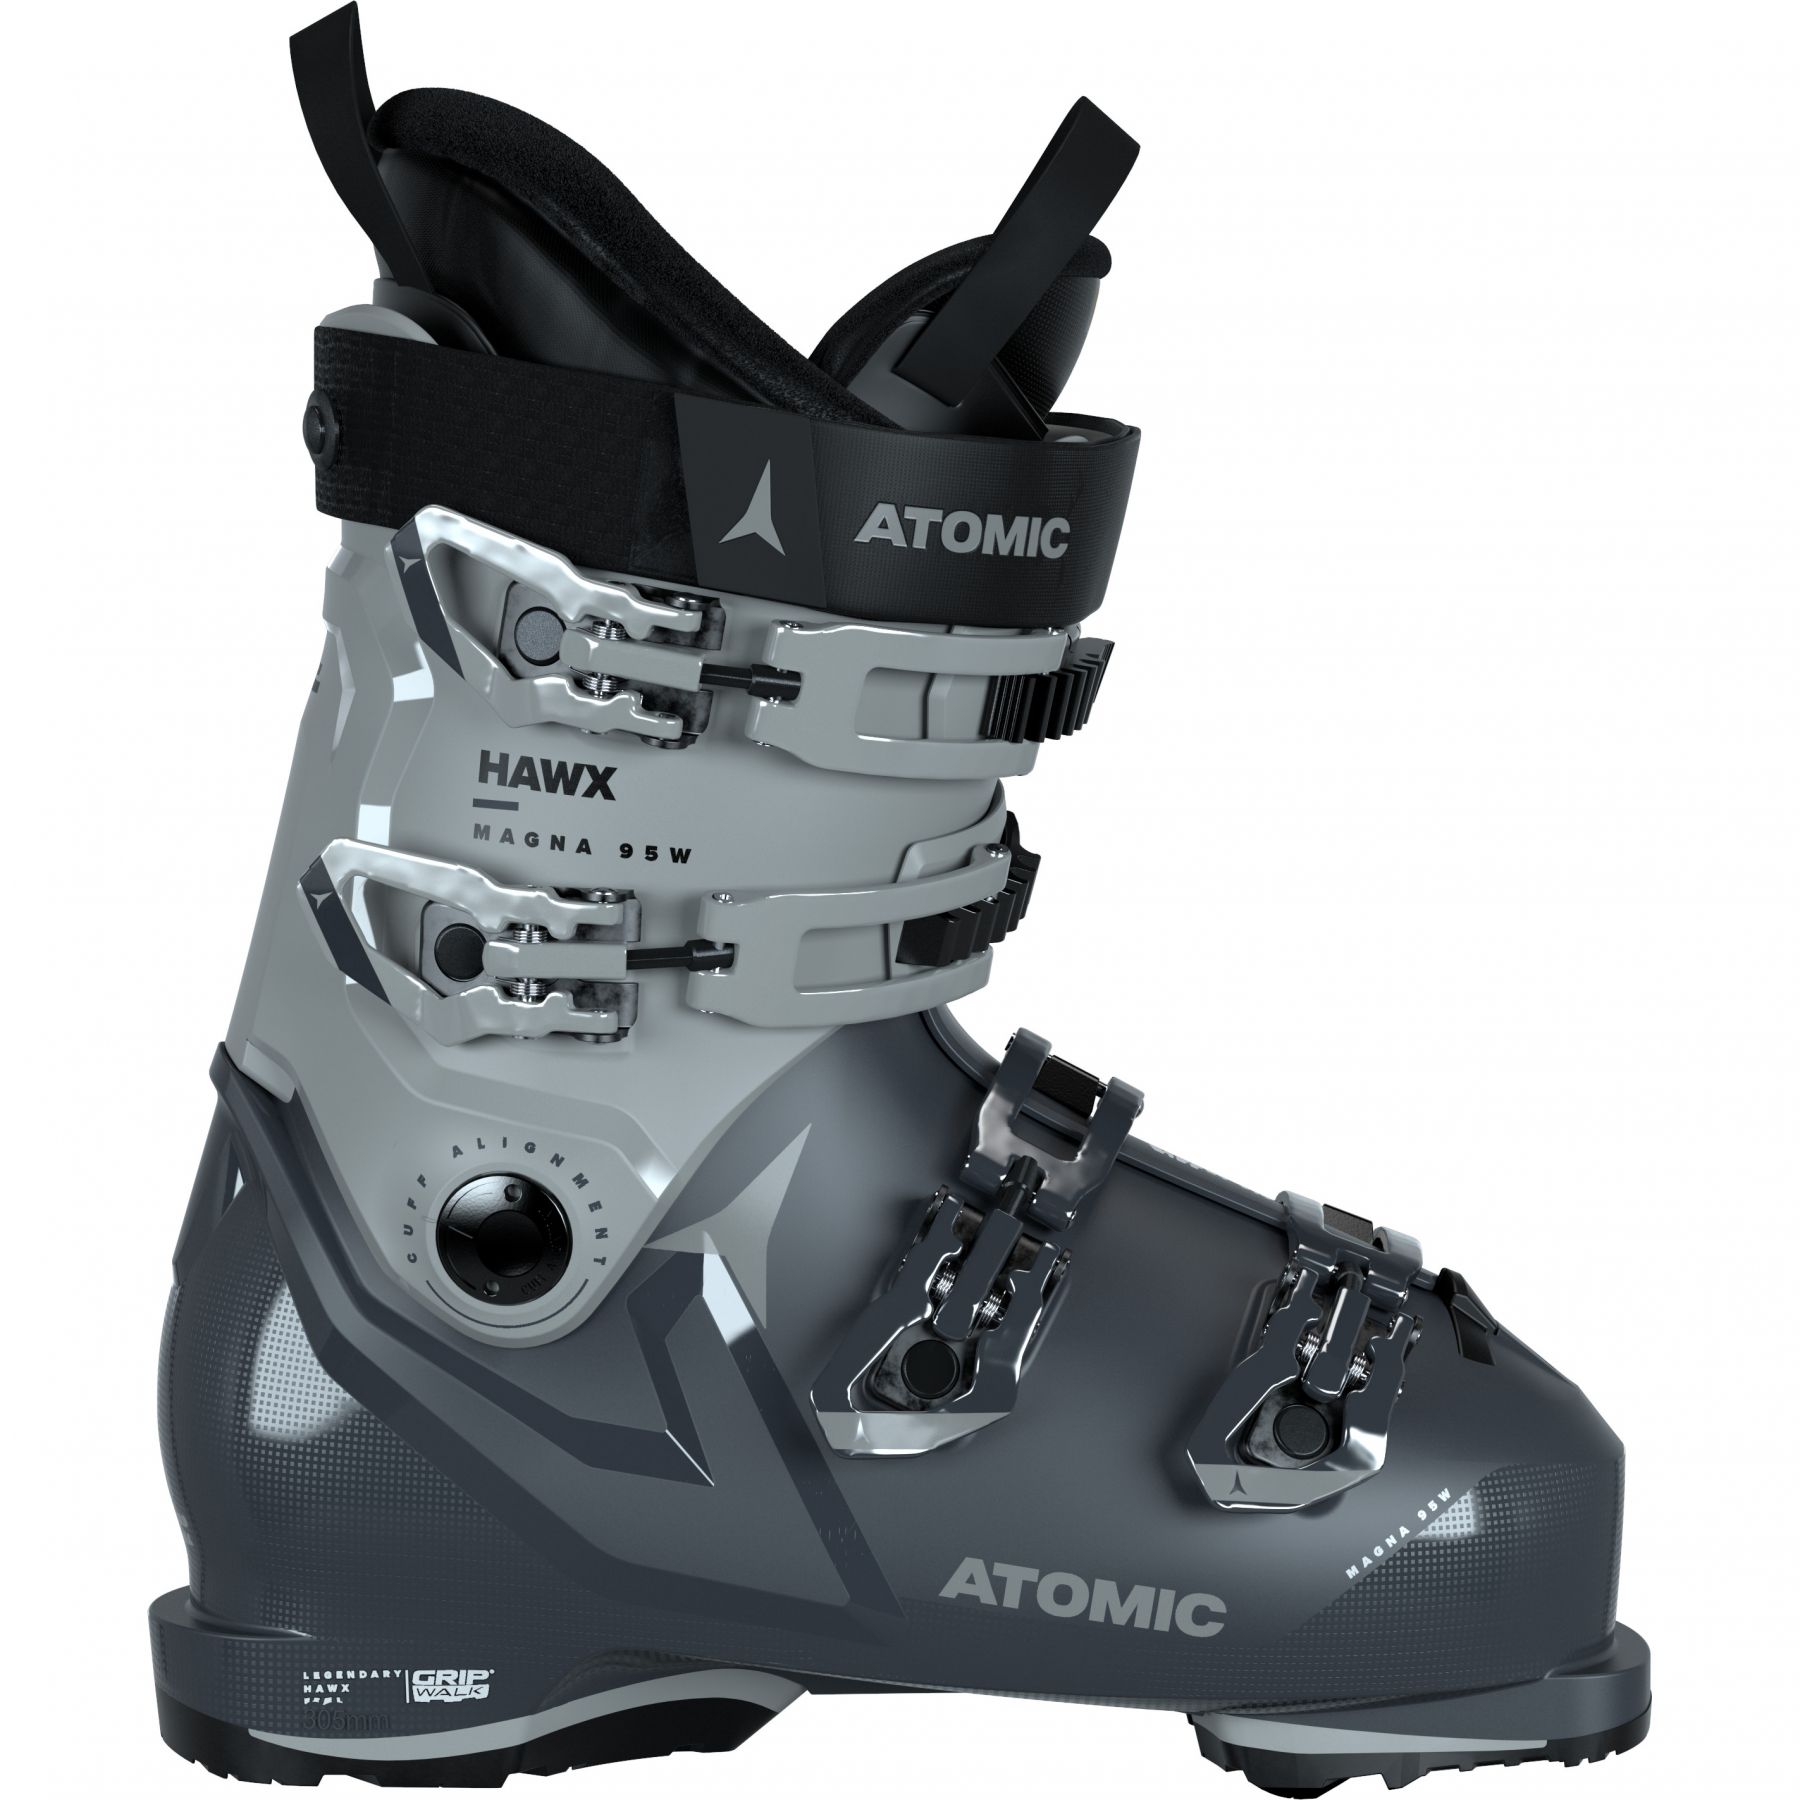 Billede af Atomic Hawx Magna 95 W, skistøvler, dame, grå hos Skisport.dk